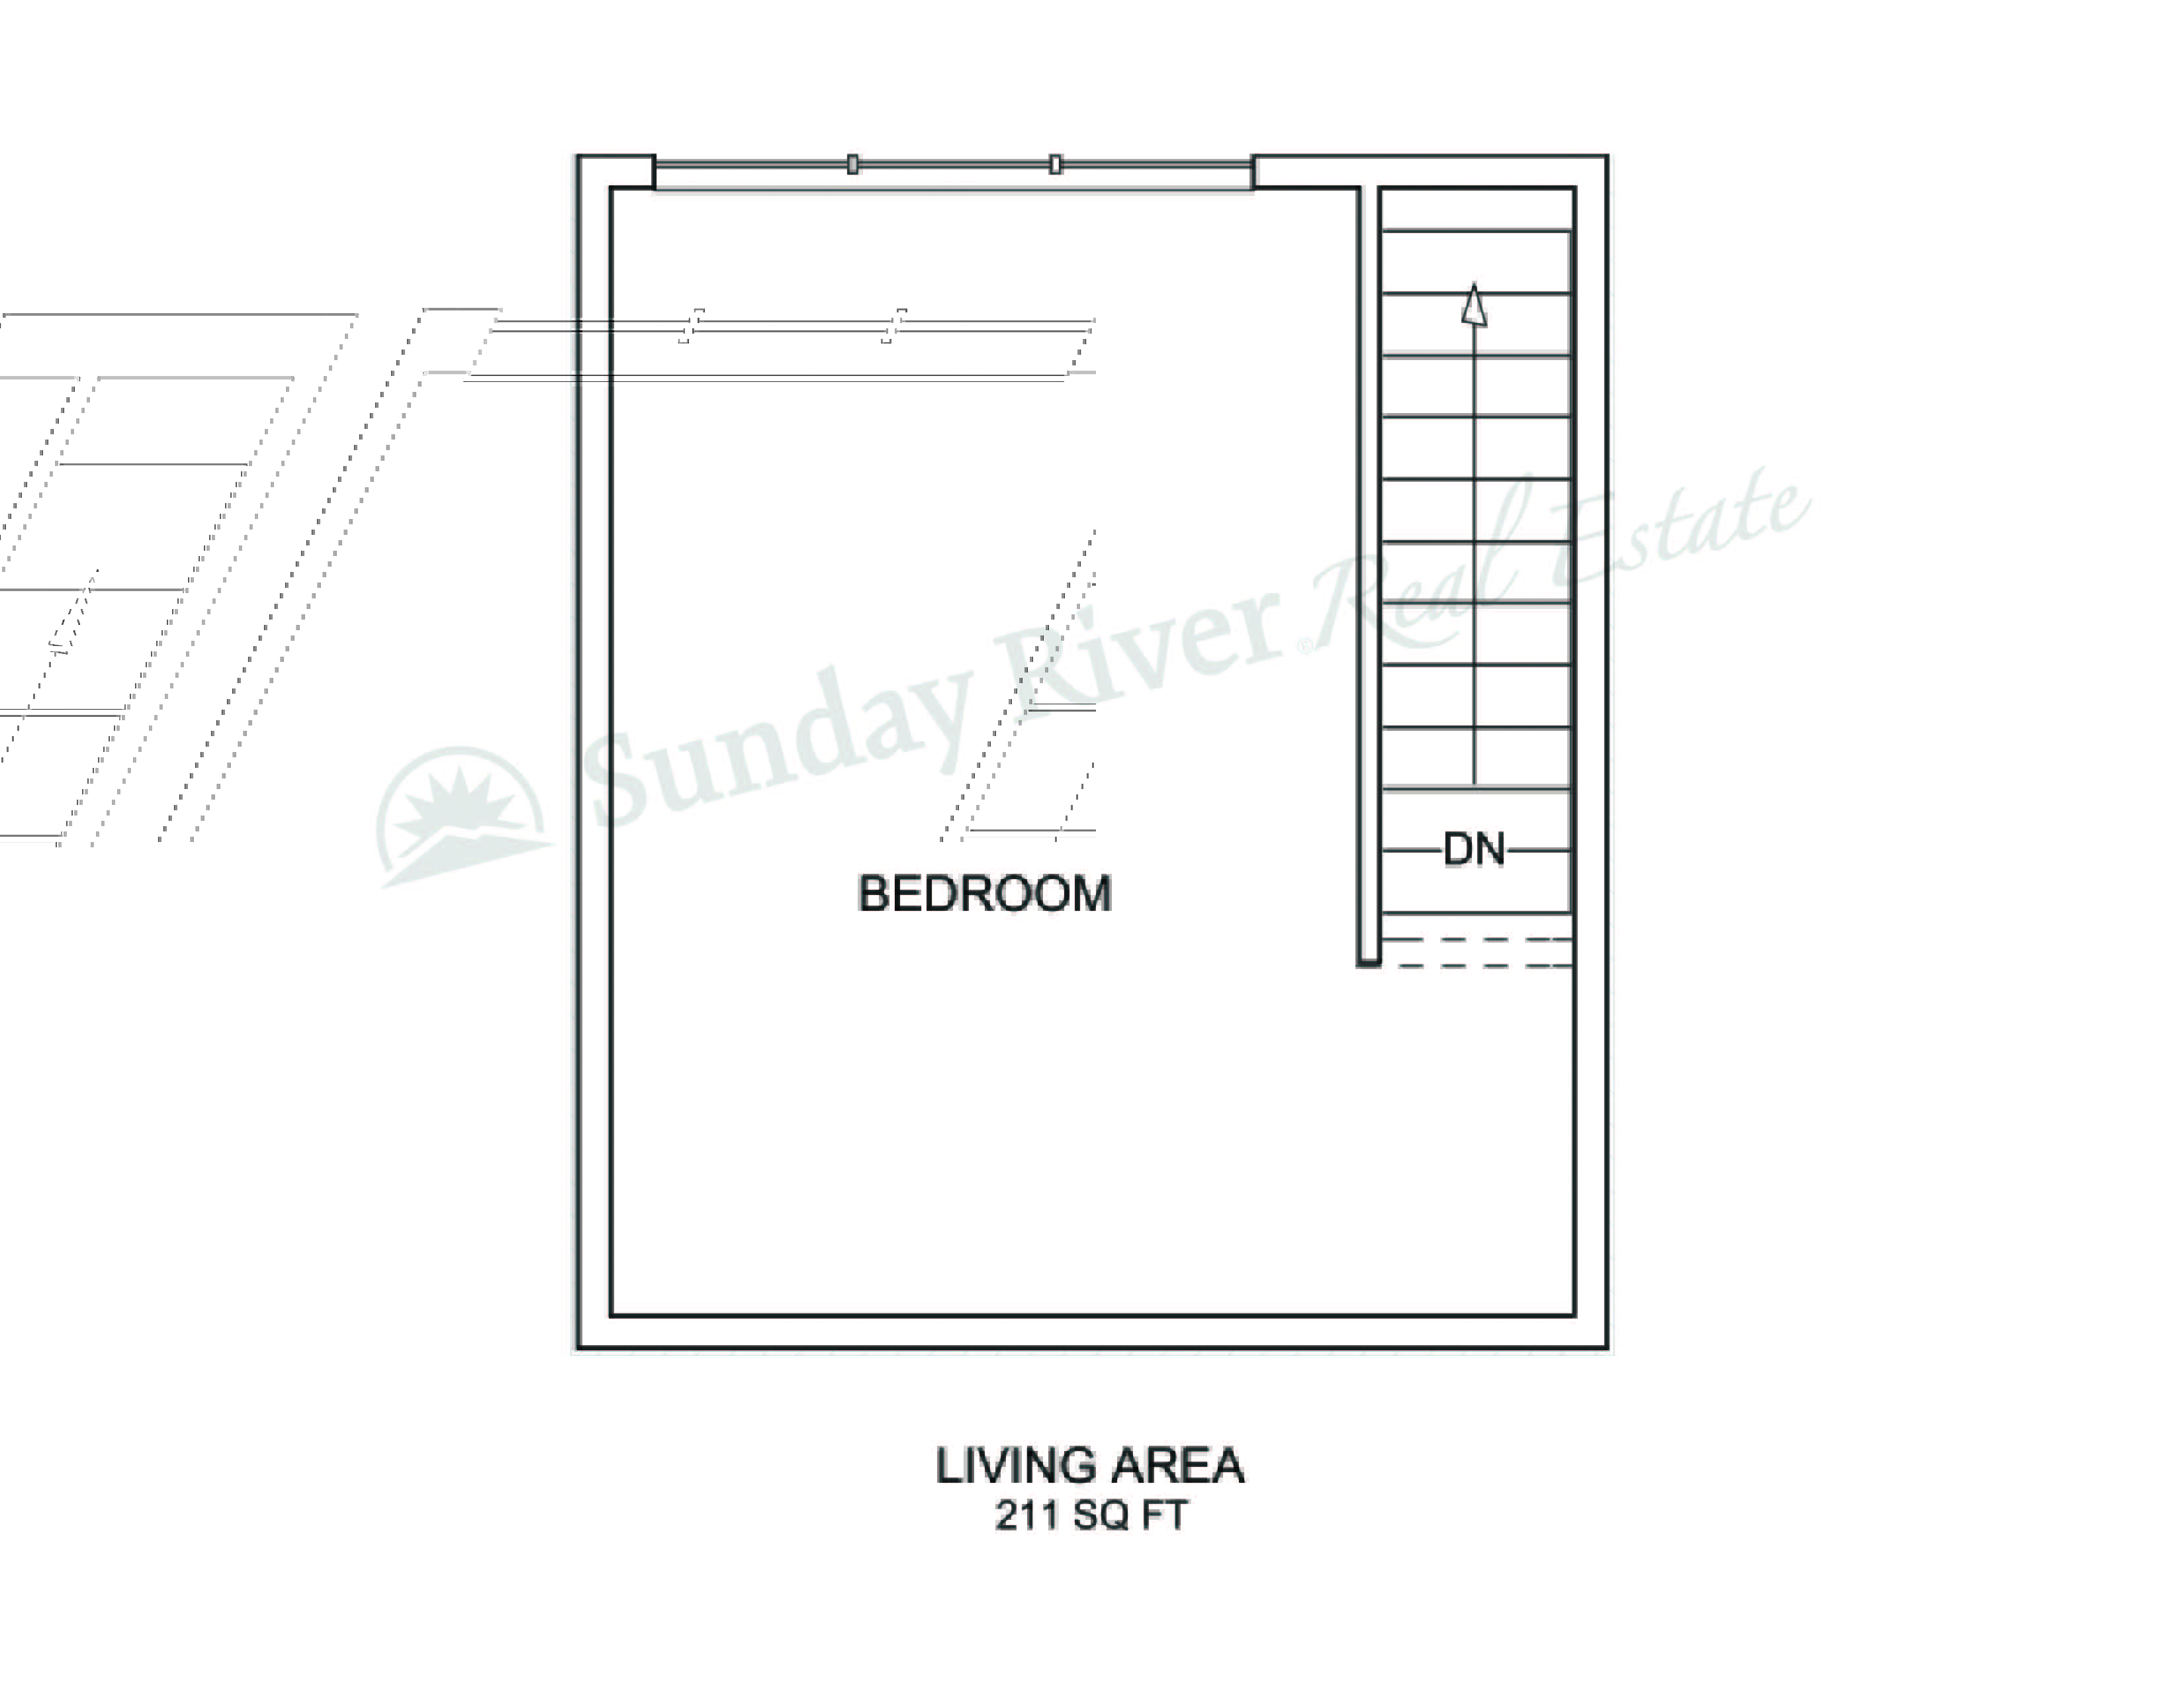 1-Bedroom Floor Plan with Upper Level - Bedroom